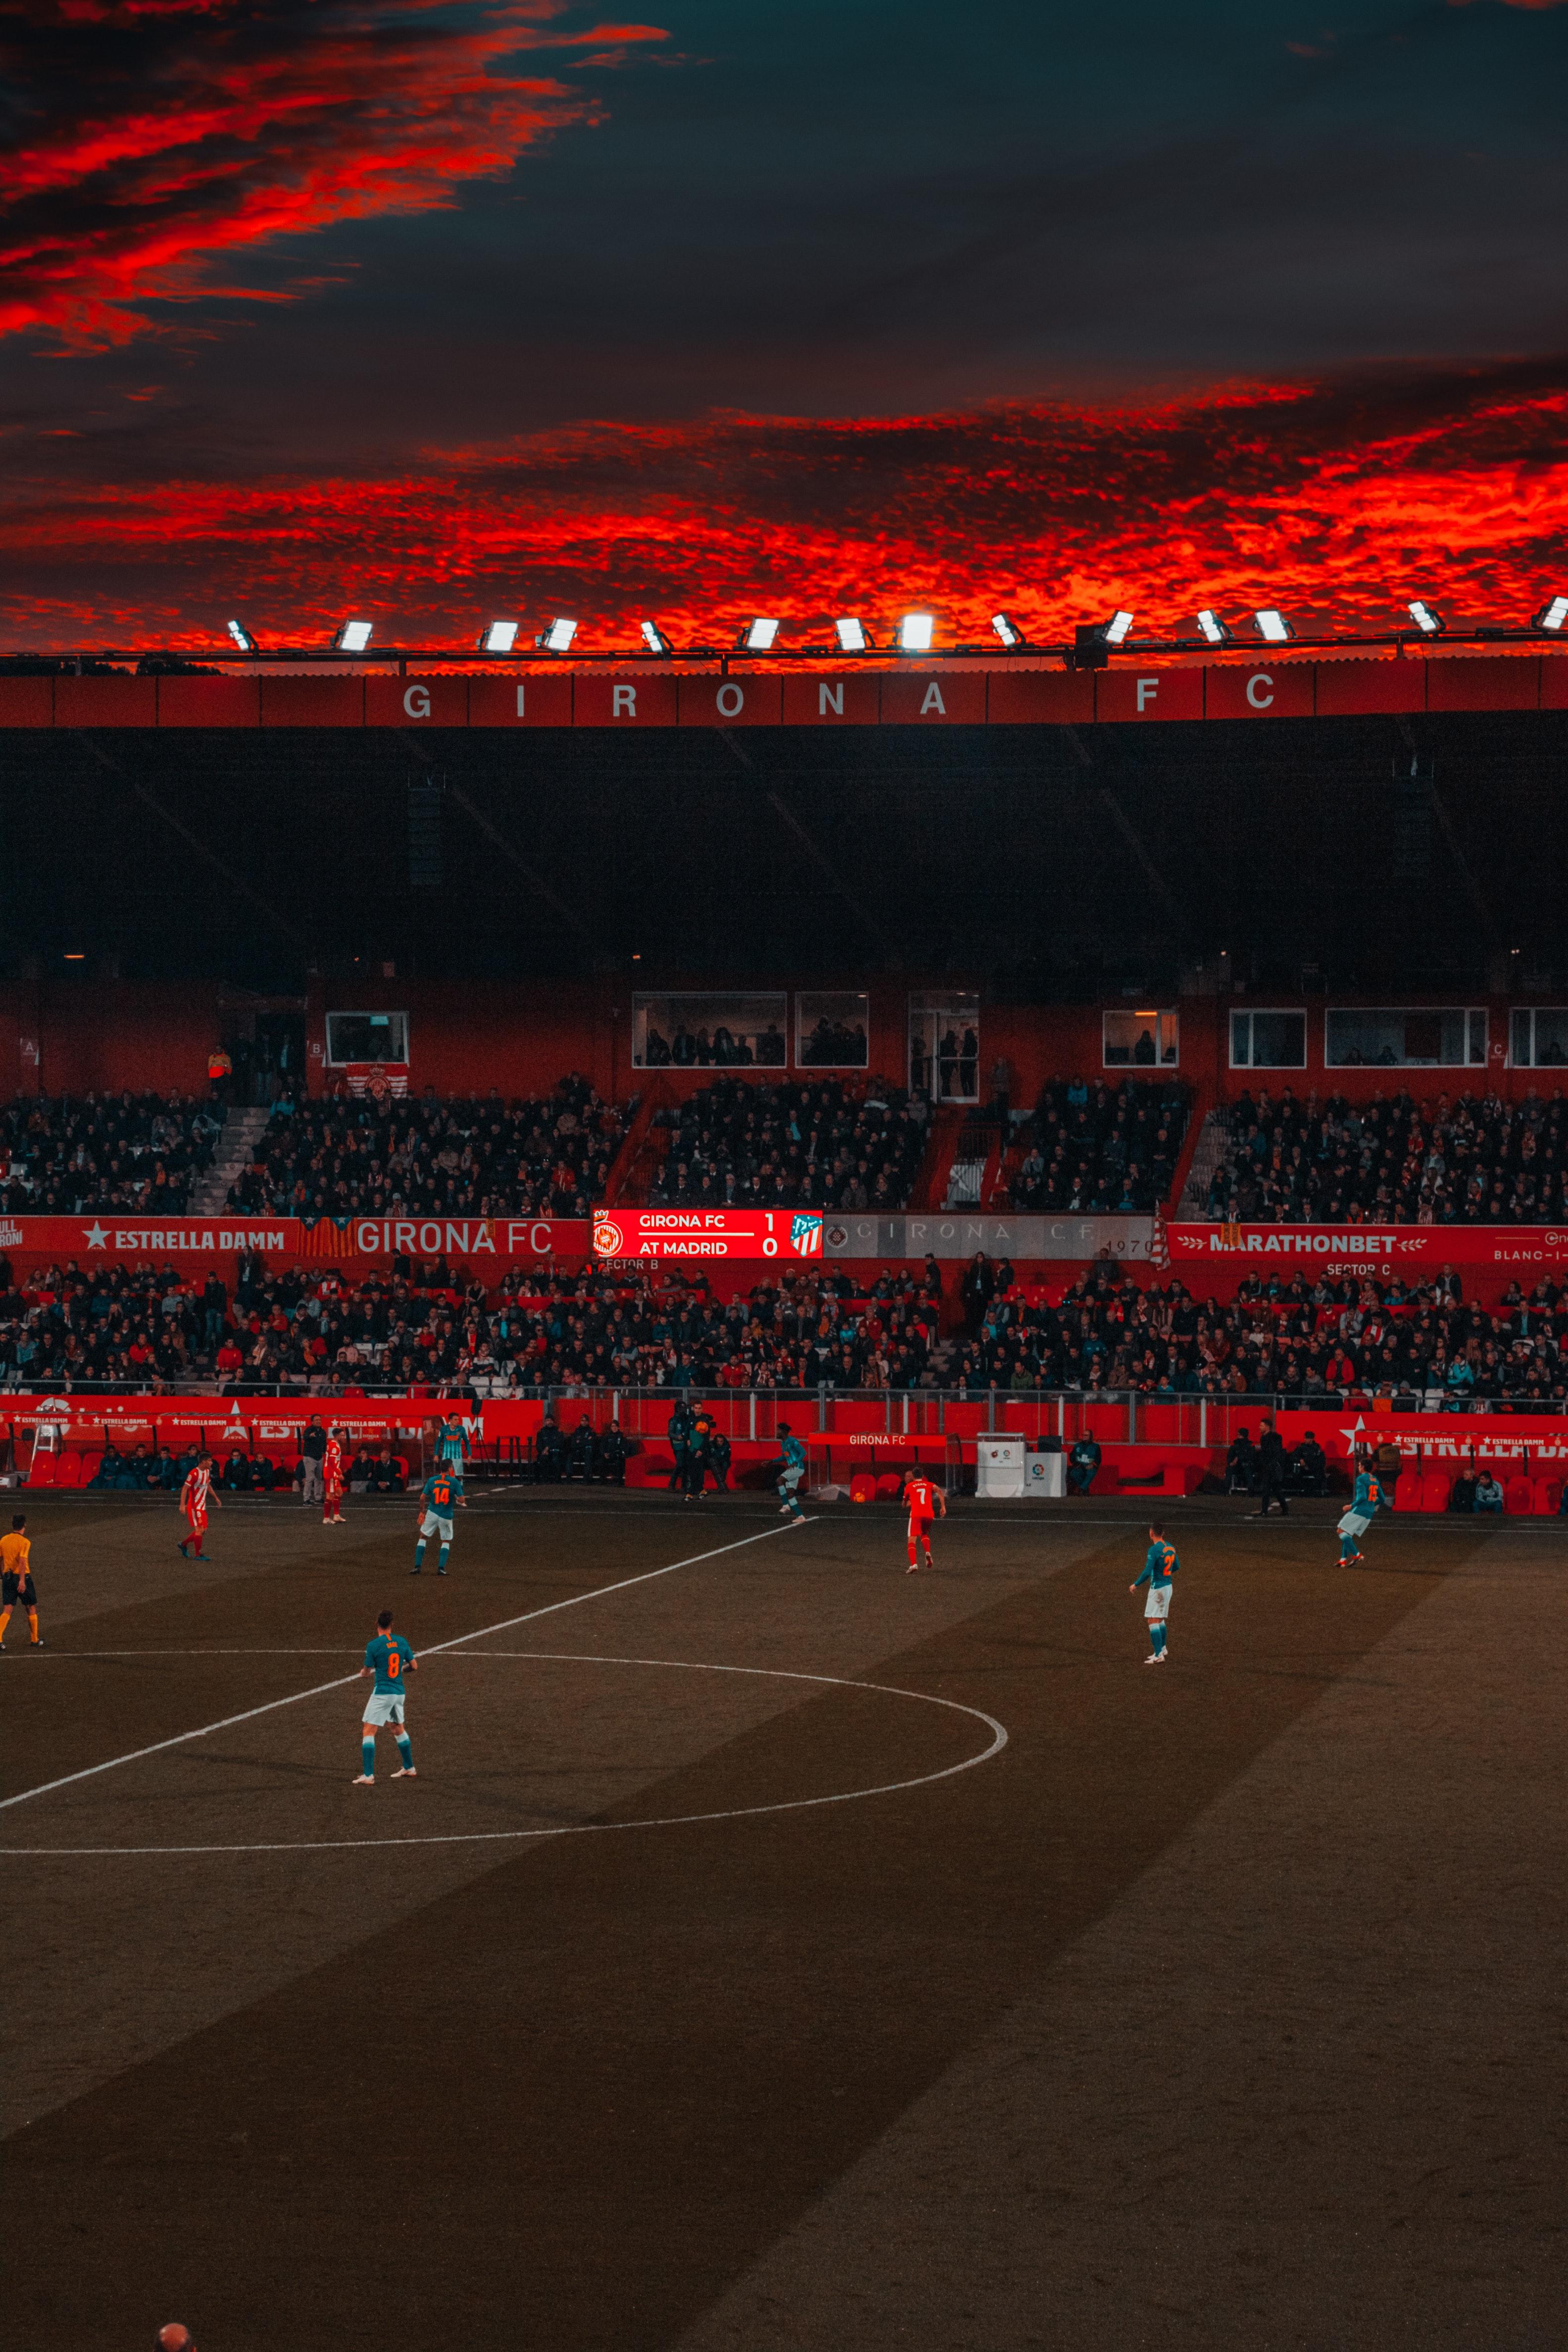 Beautiful Stadium Photo